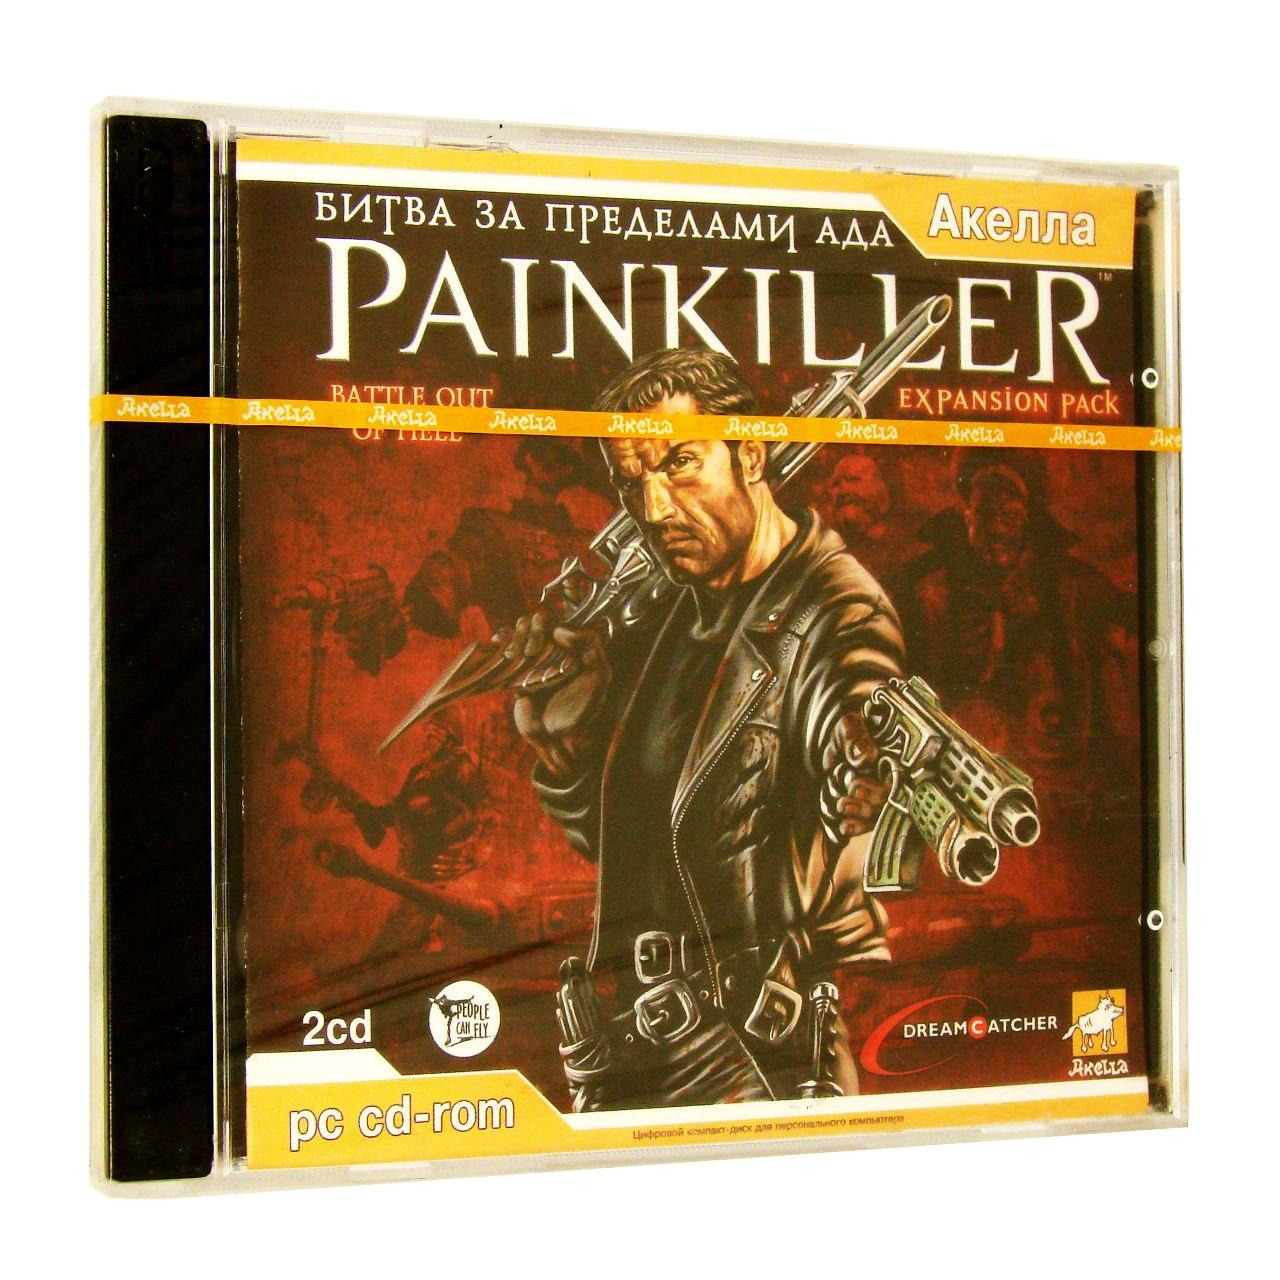 Компьютерный компакт-диск Painkiller : Битва за Пределами Ада (Дополнение) (ПК), фирма "Акелла", 2CD